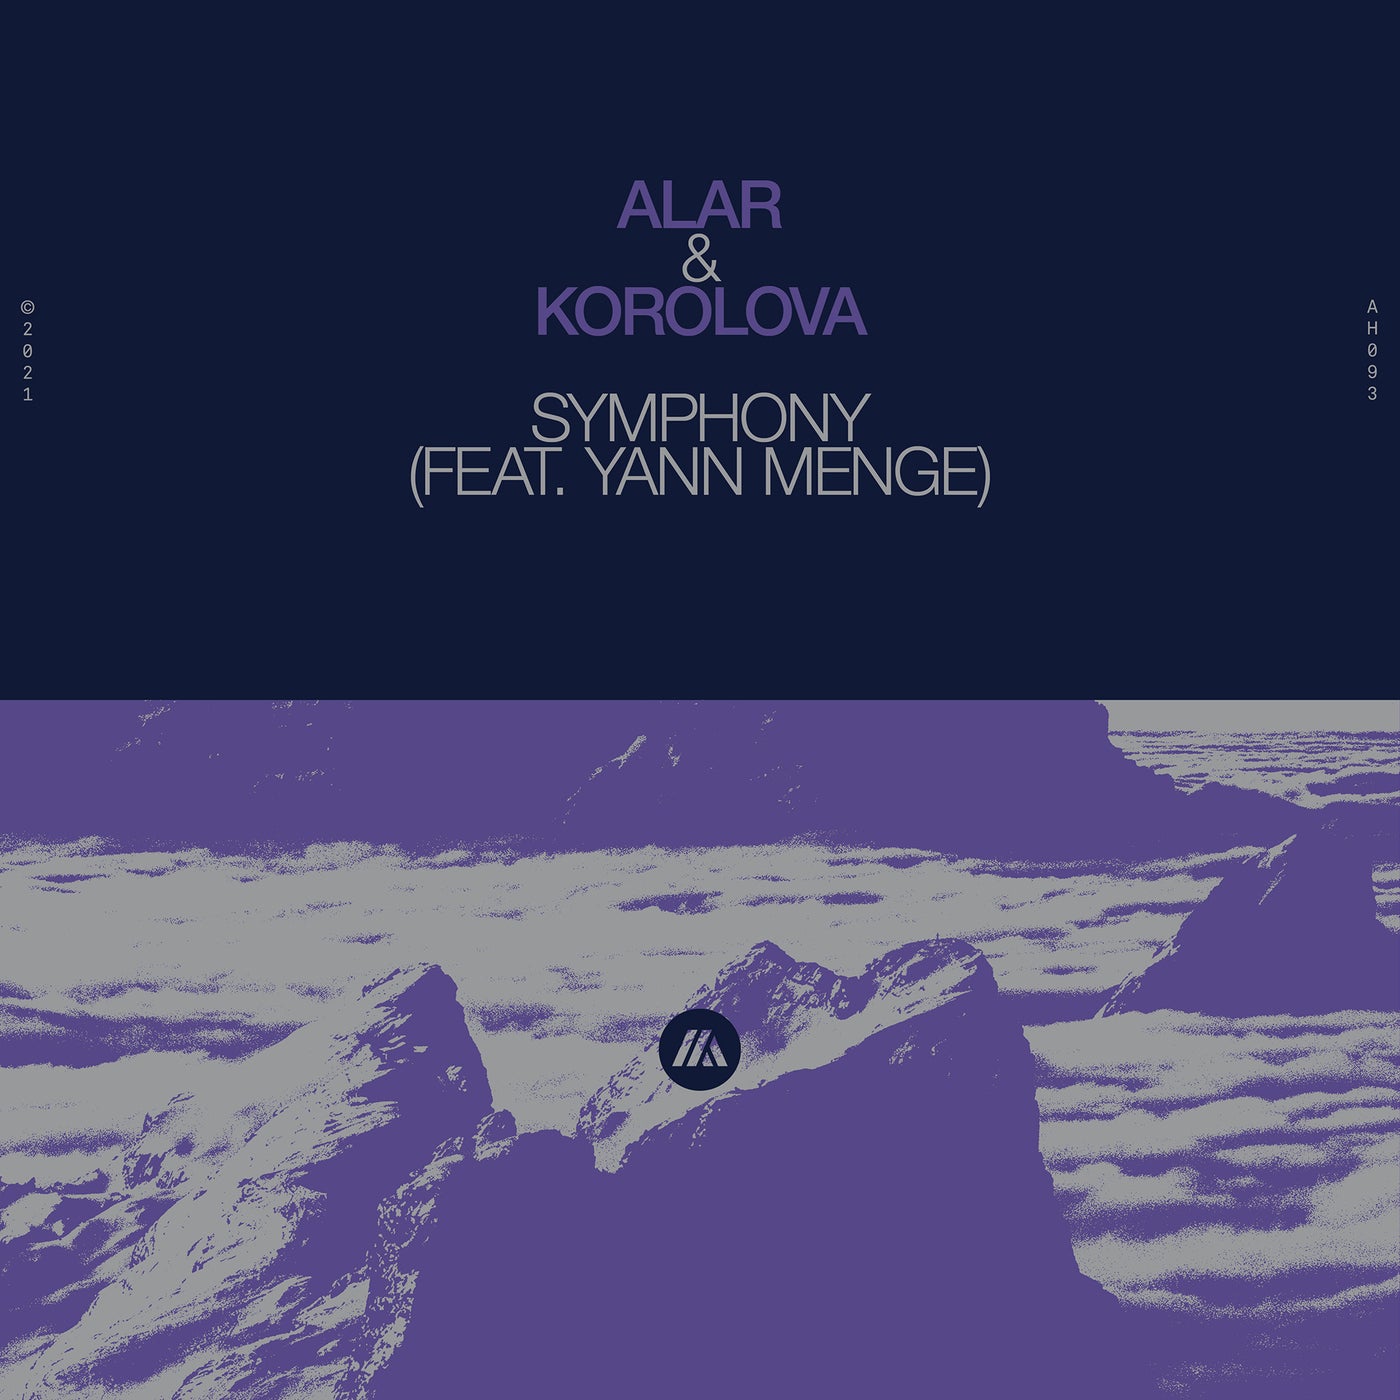 Alar & Korolova - Symphony feat. Yann Menge (Extended Mix)